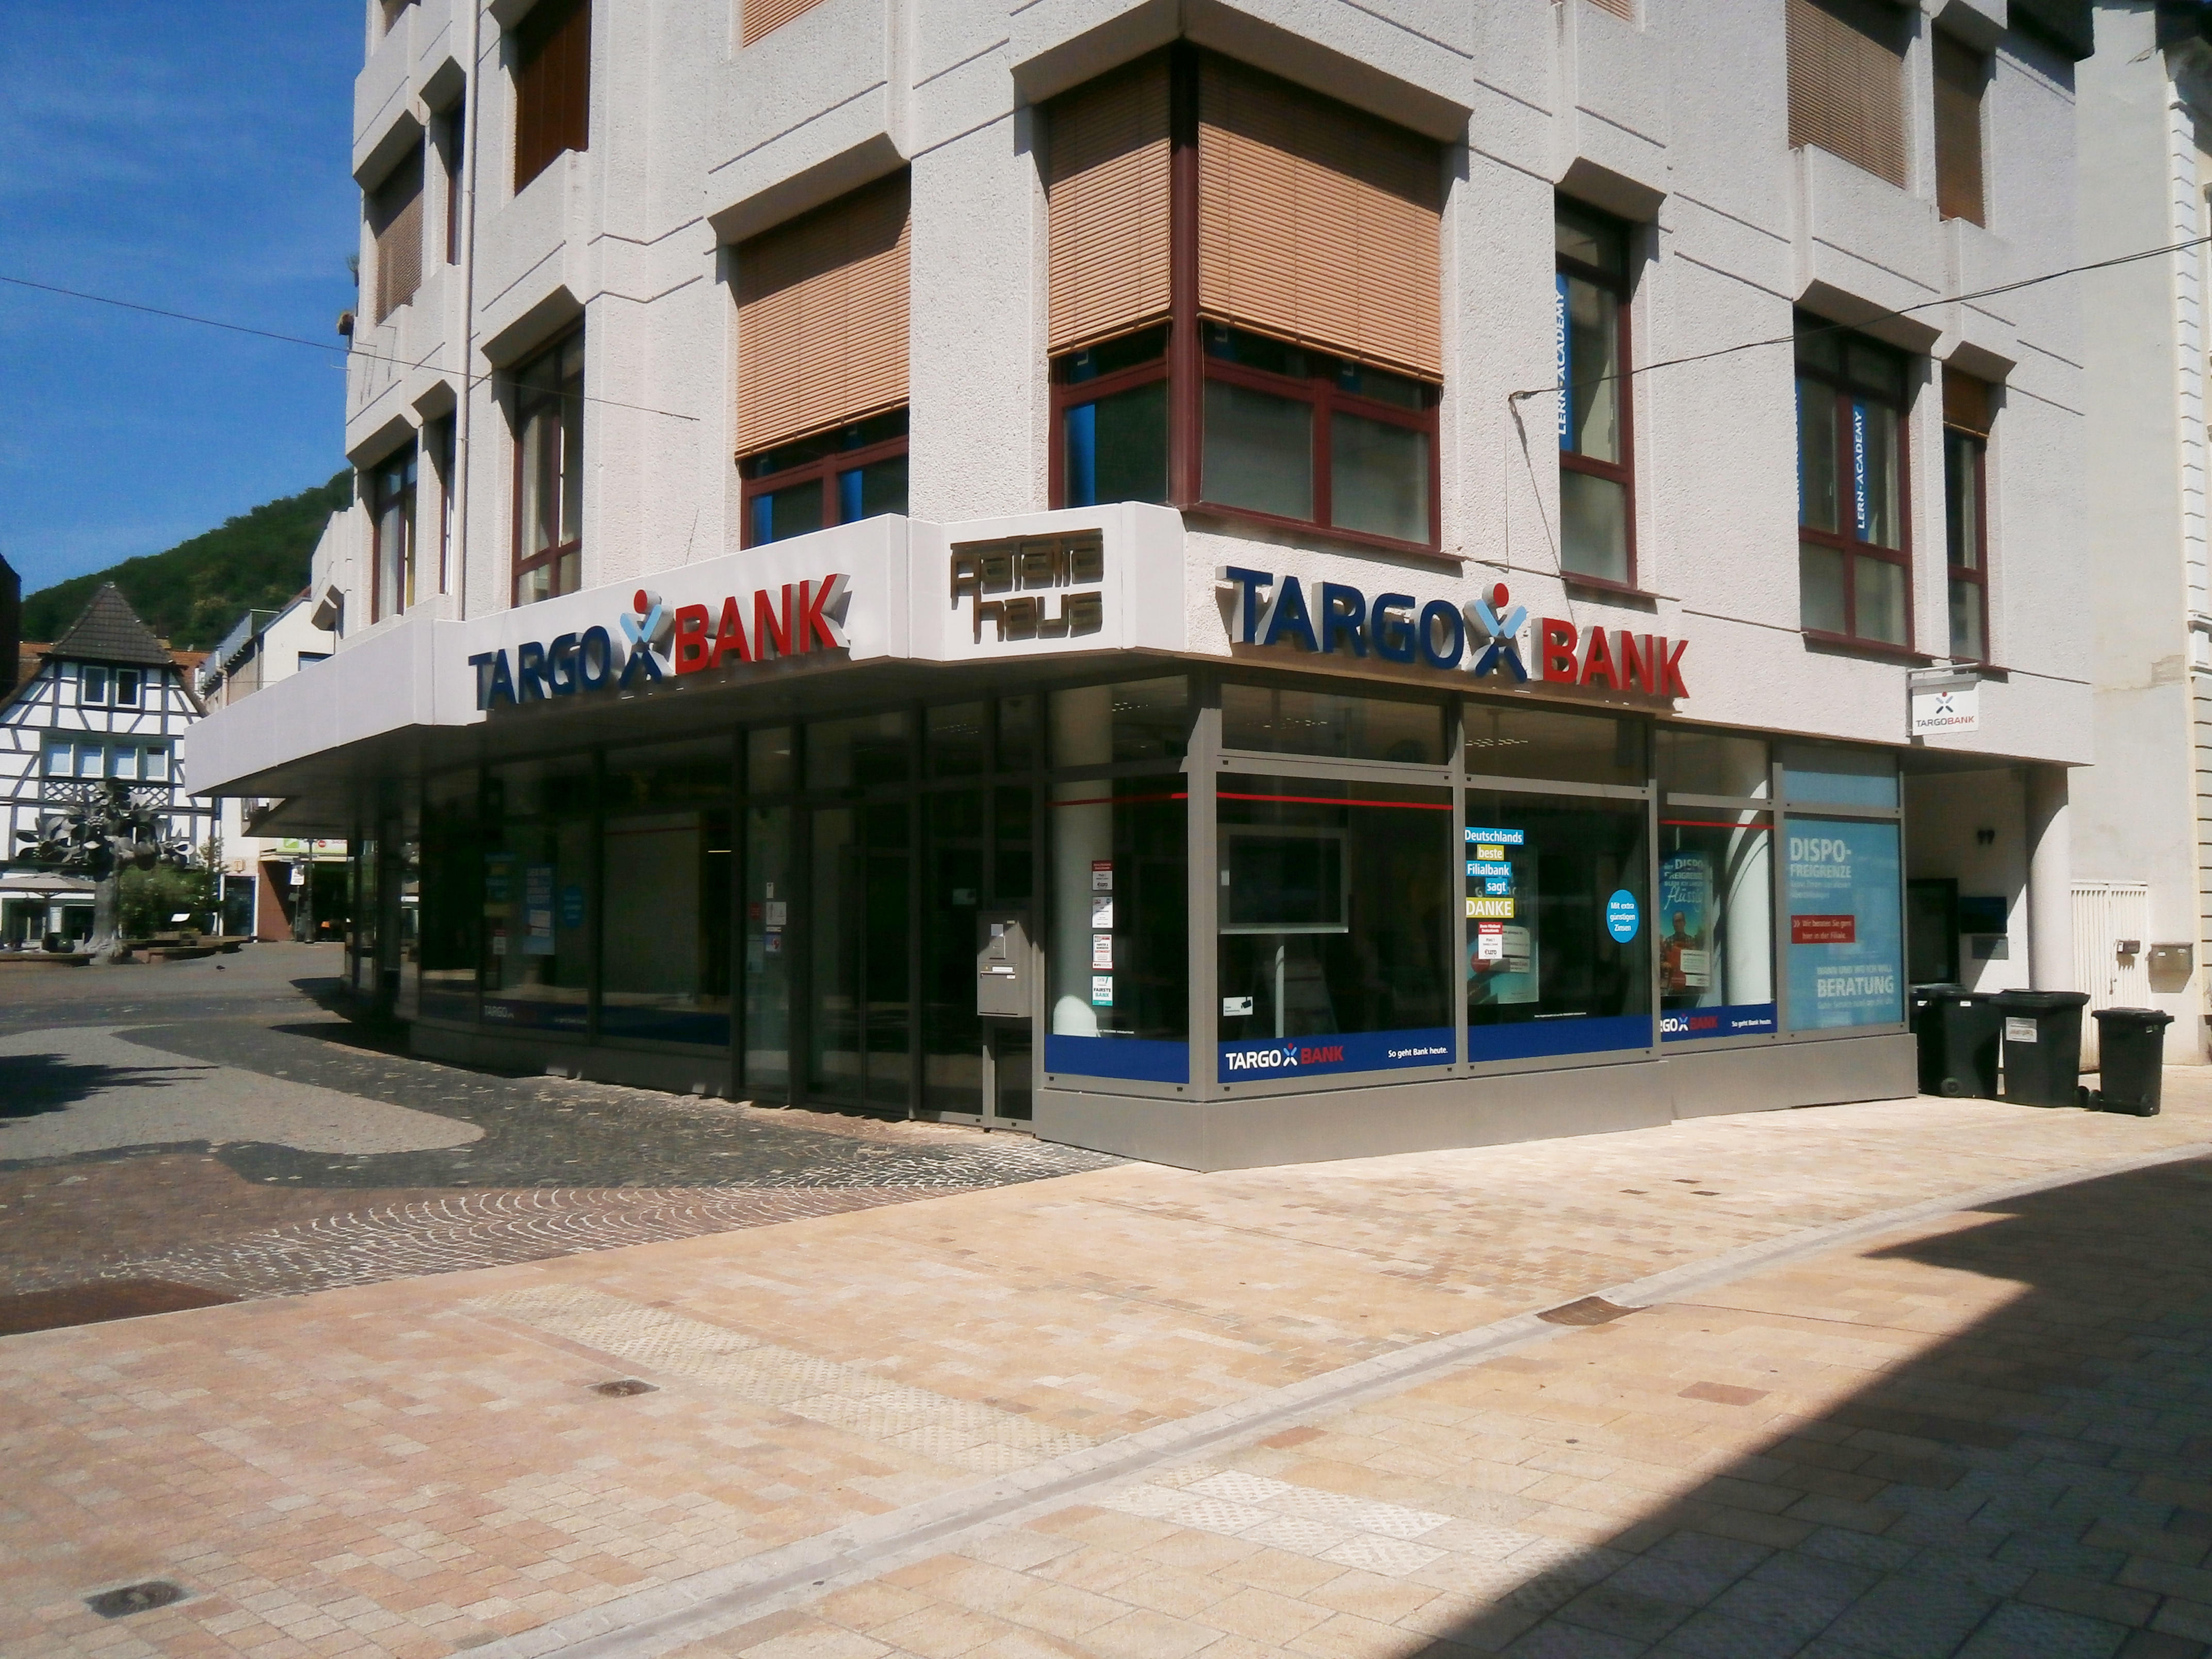 Bild 1 TARGOBANK in Neustadt an der Weinstraße